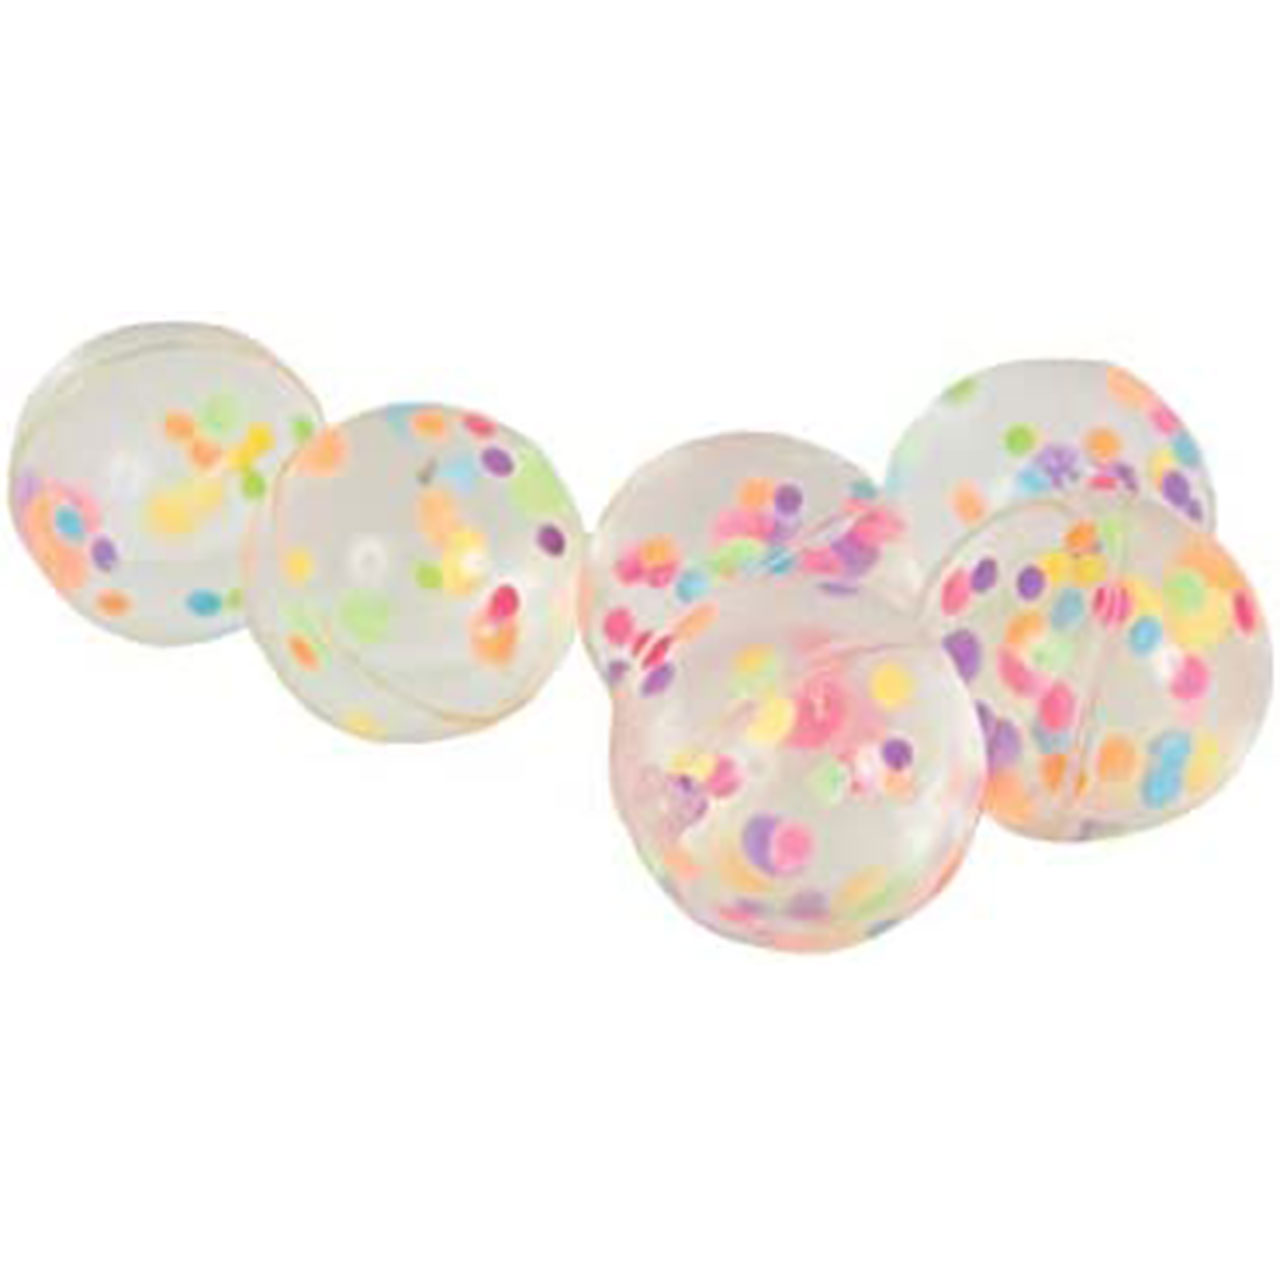 Bounce Ball - Pastel Confetti